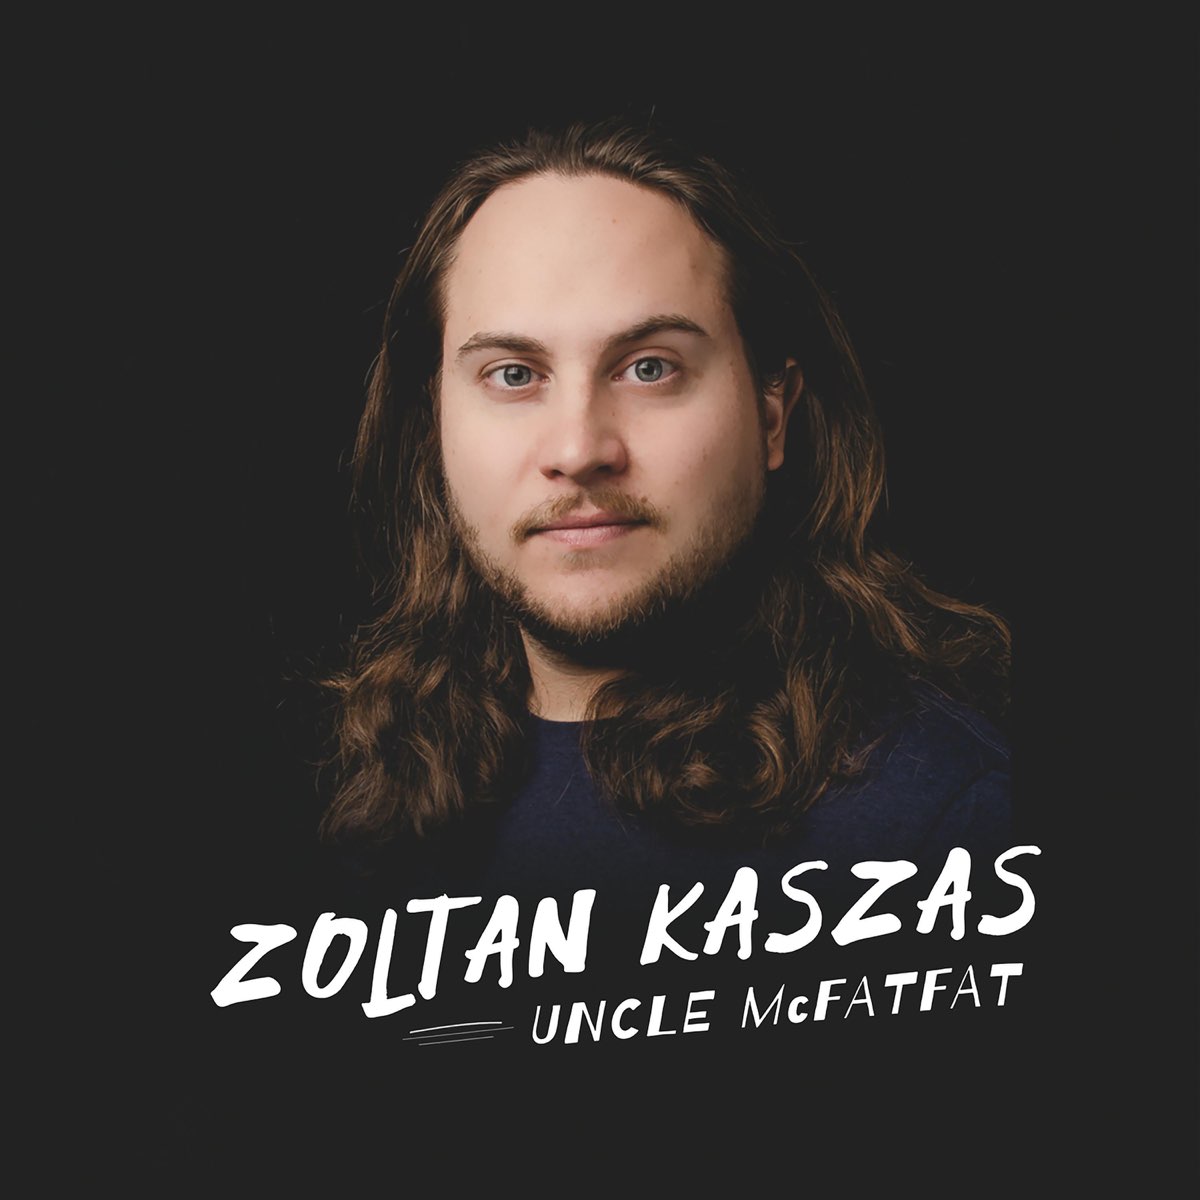 Zoltan kaszas married